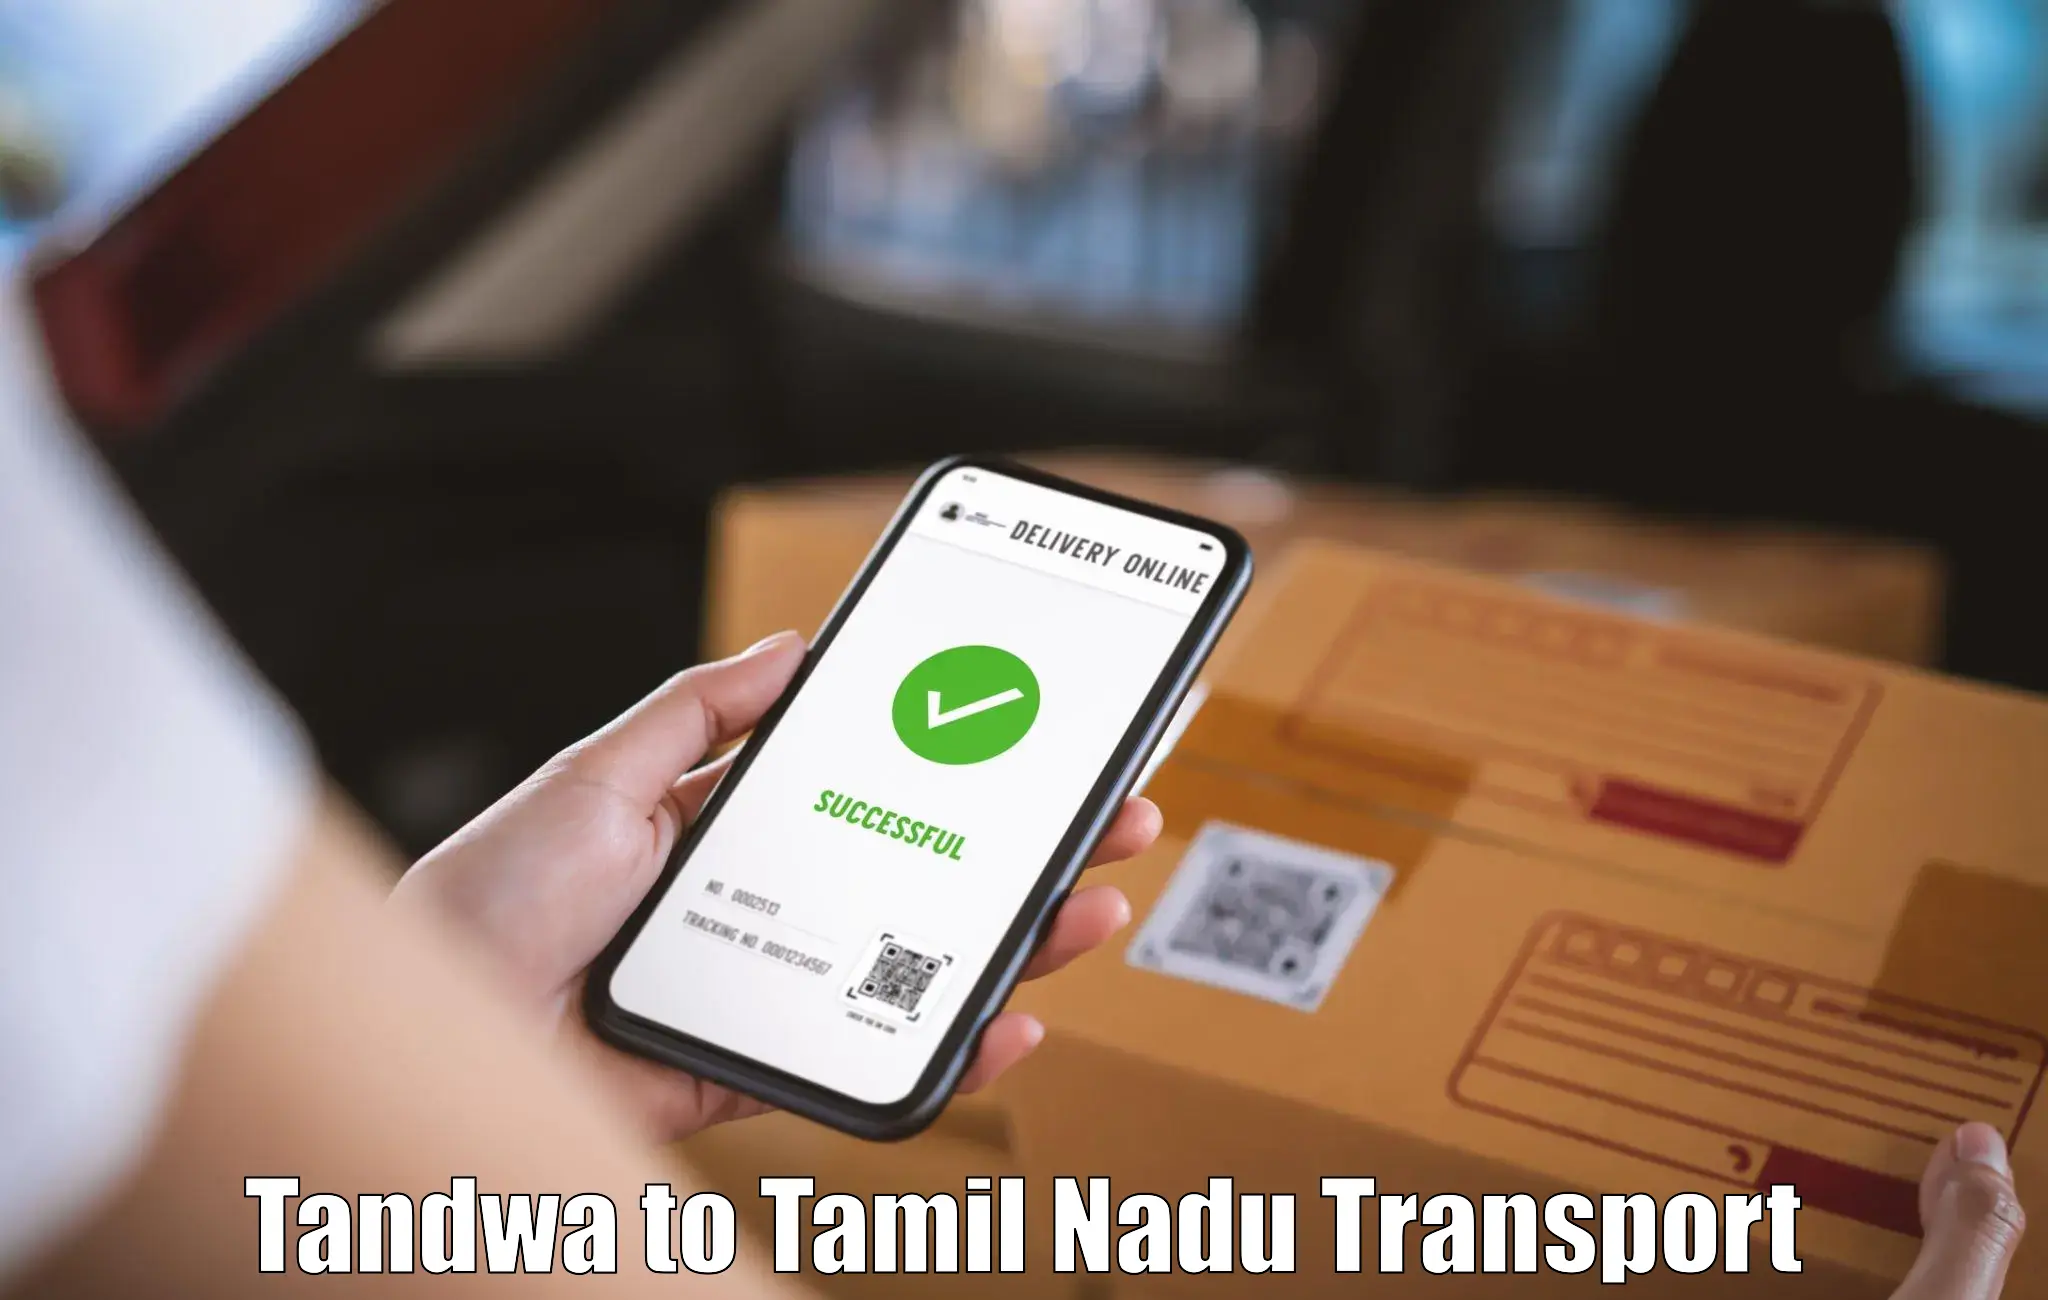 Intercity transport Tandwa to Namakkal